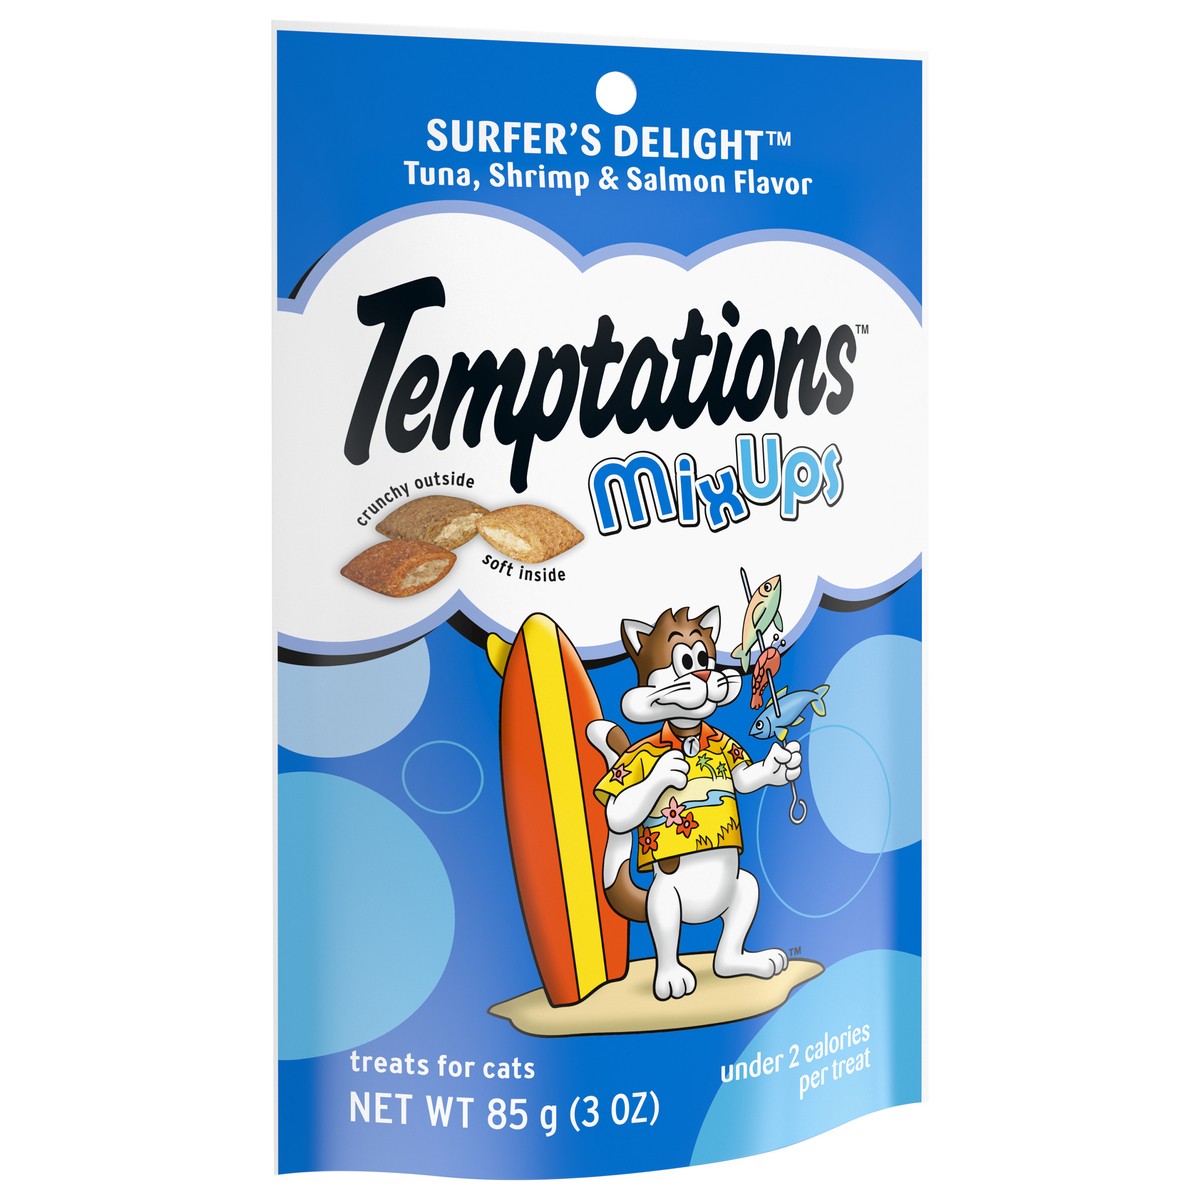 slide 2 of 9, Temptations Surfer's Delight Mix Ups Tuna, Shrimp & Salmon Flavor Cat Treats 3 oz, 3 oz